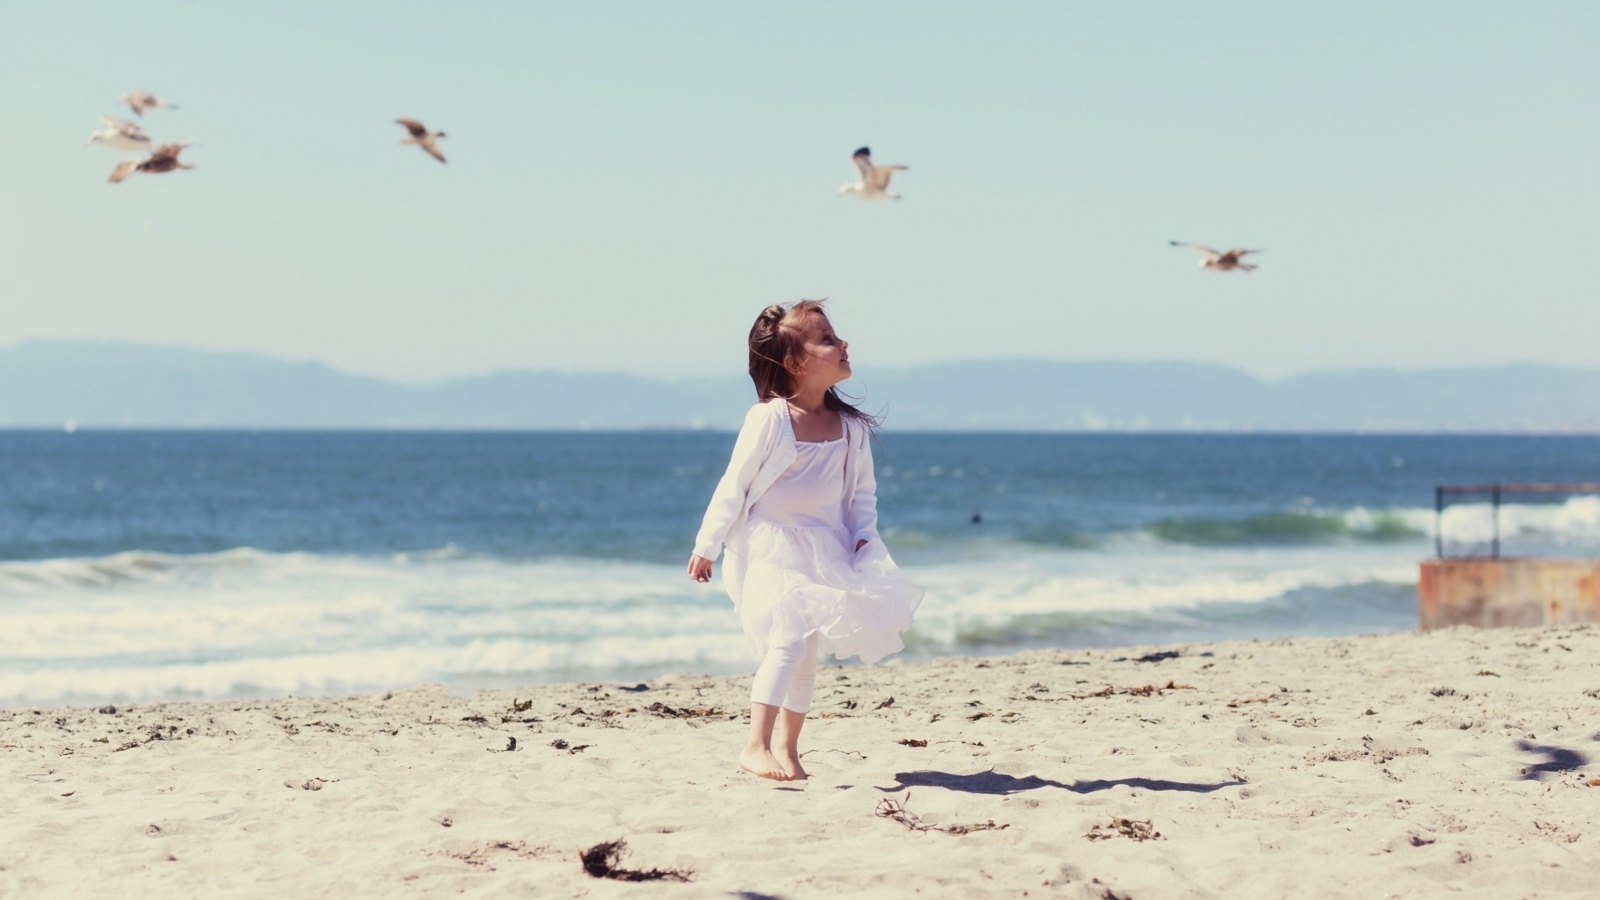 Little Girl At Beach And Seagulls wallpaper 1600x900